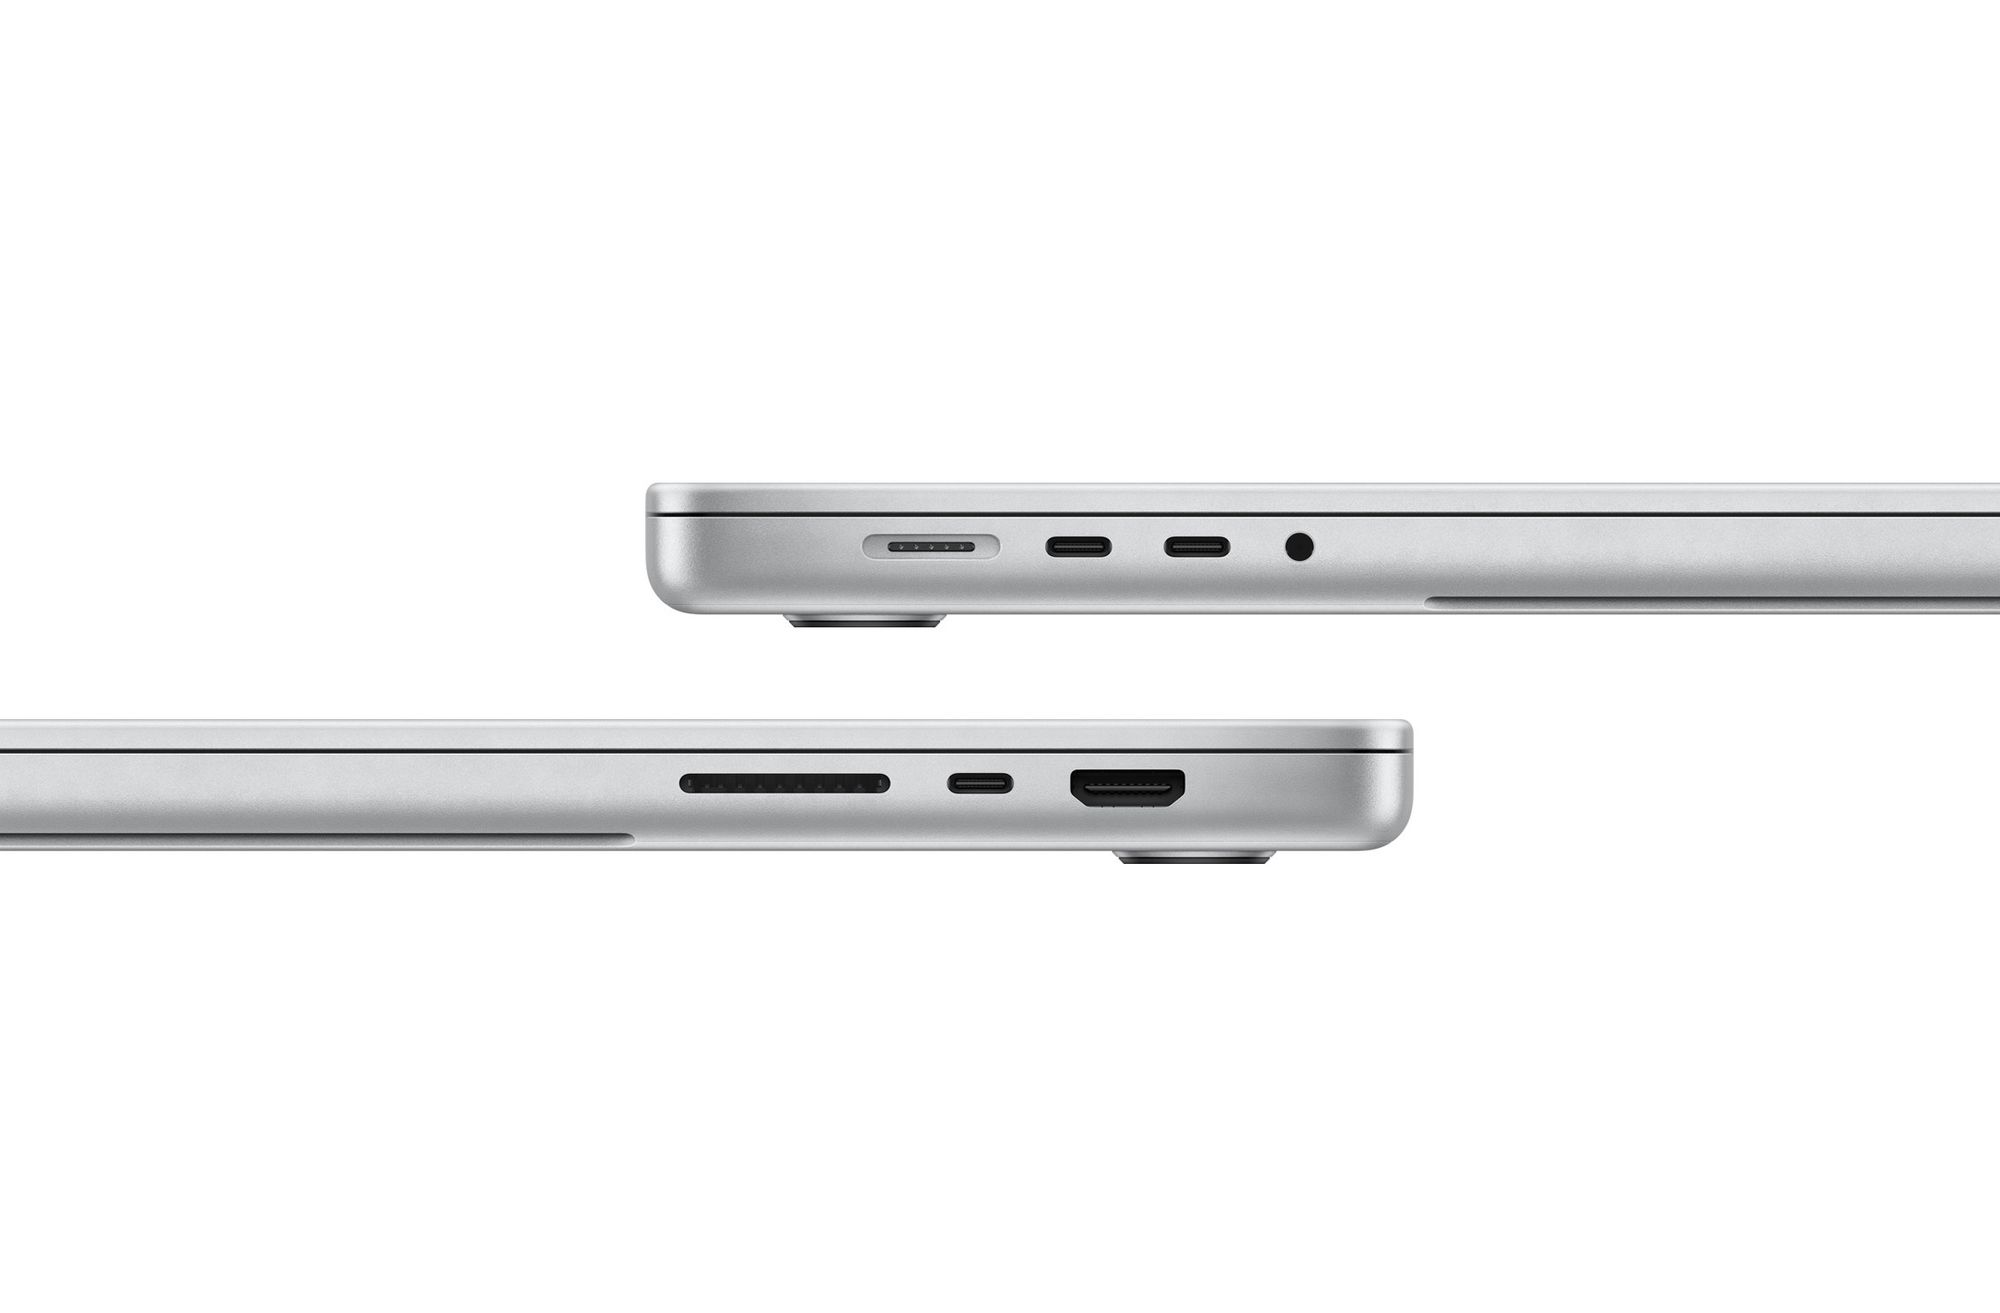 Conectividade nos novos MacBook Pro: as portas que regressaram